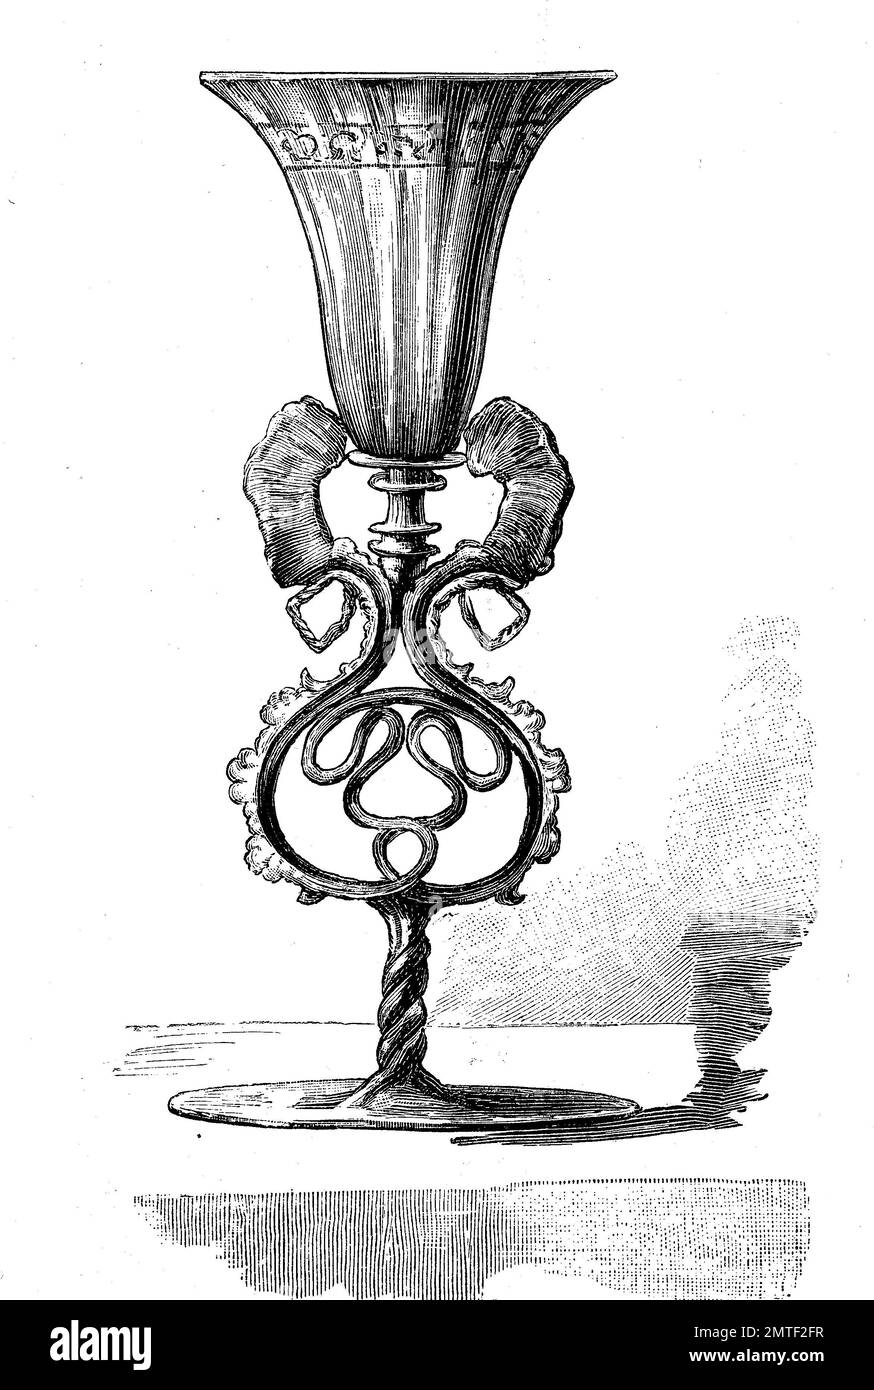 Drinkware, una coppa di vetro veneziano, Venezia, Italia, 16. secolo, xilografia a partire dall'anno 1880 Foto Stock